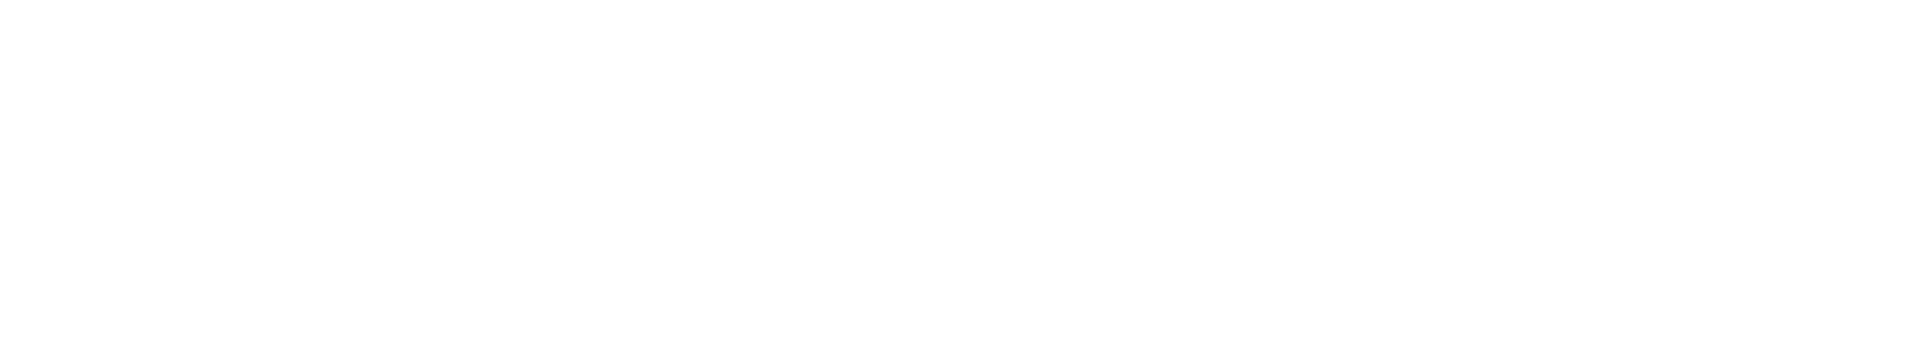 ariston-logo-black-and-white